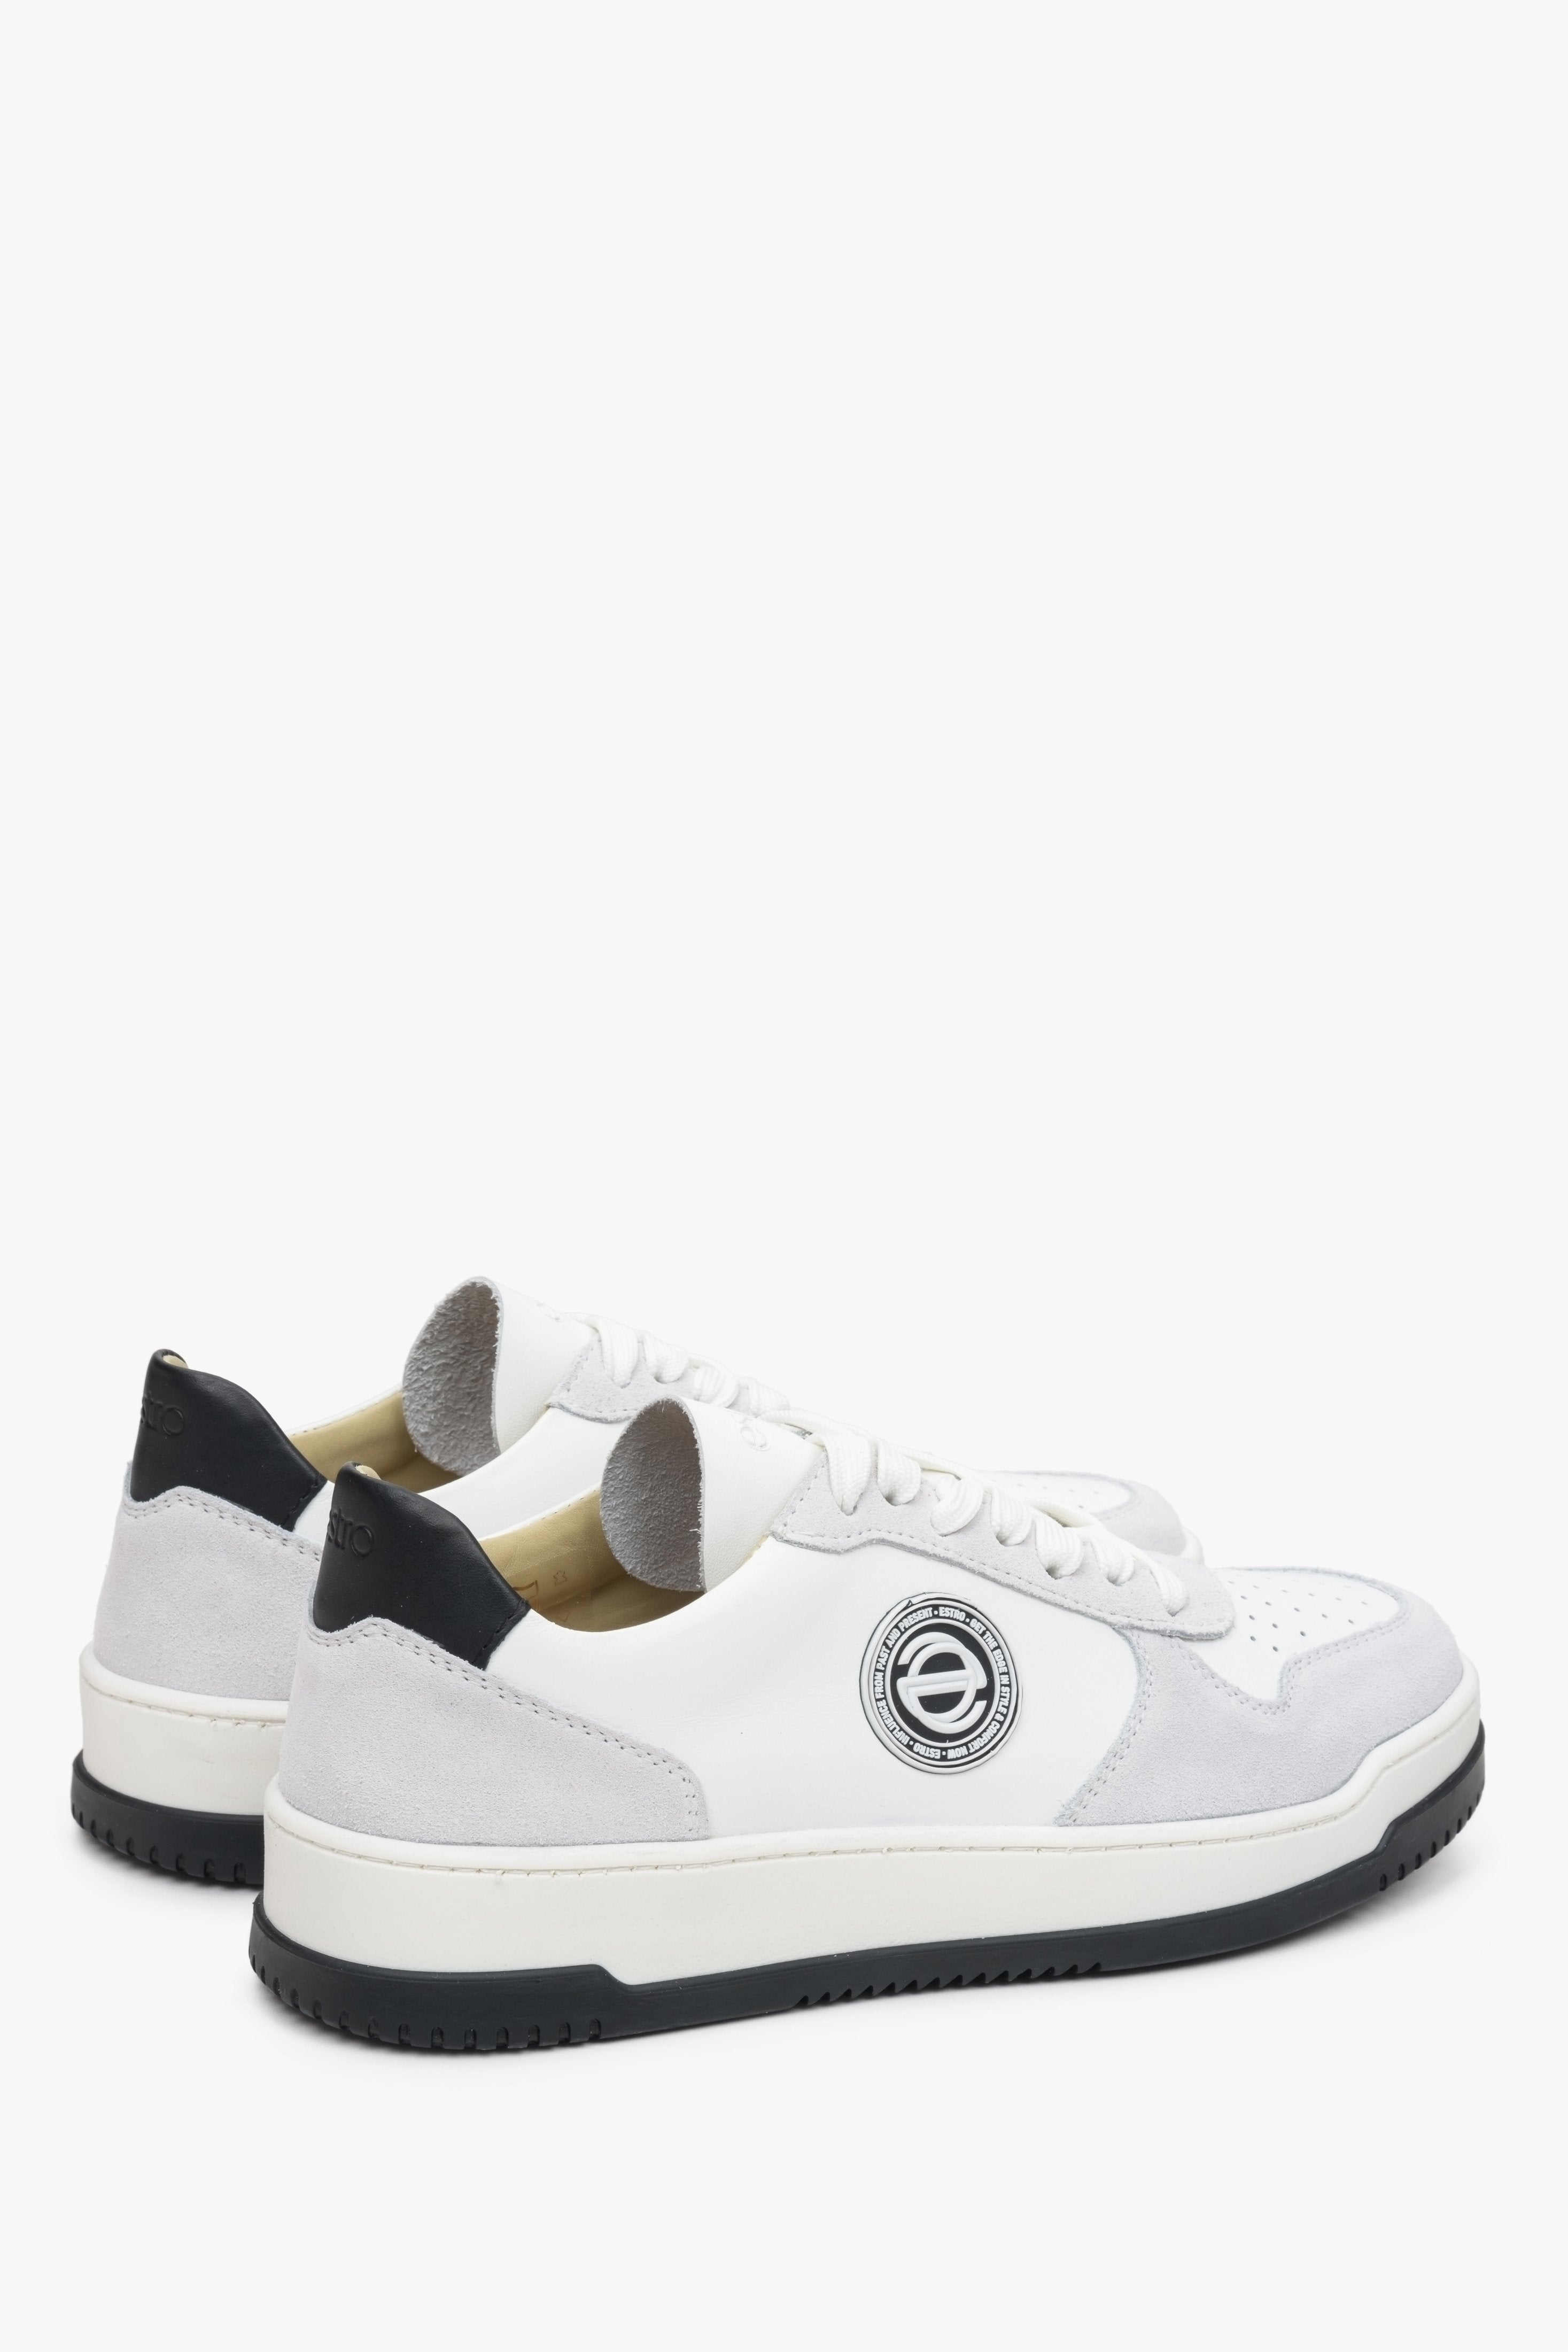 Skórzane, szaro-białe sneakersy damskie ze sznurowaniem Estro - zbliżenie na zapiętek i przyszwę boczną.